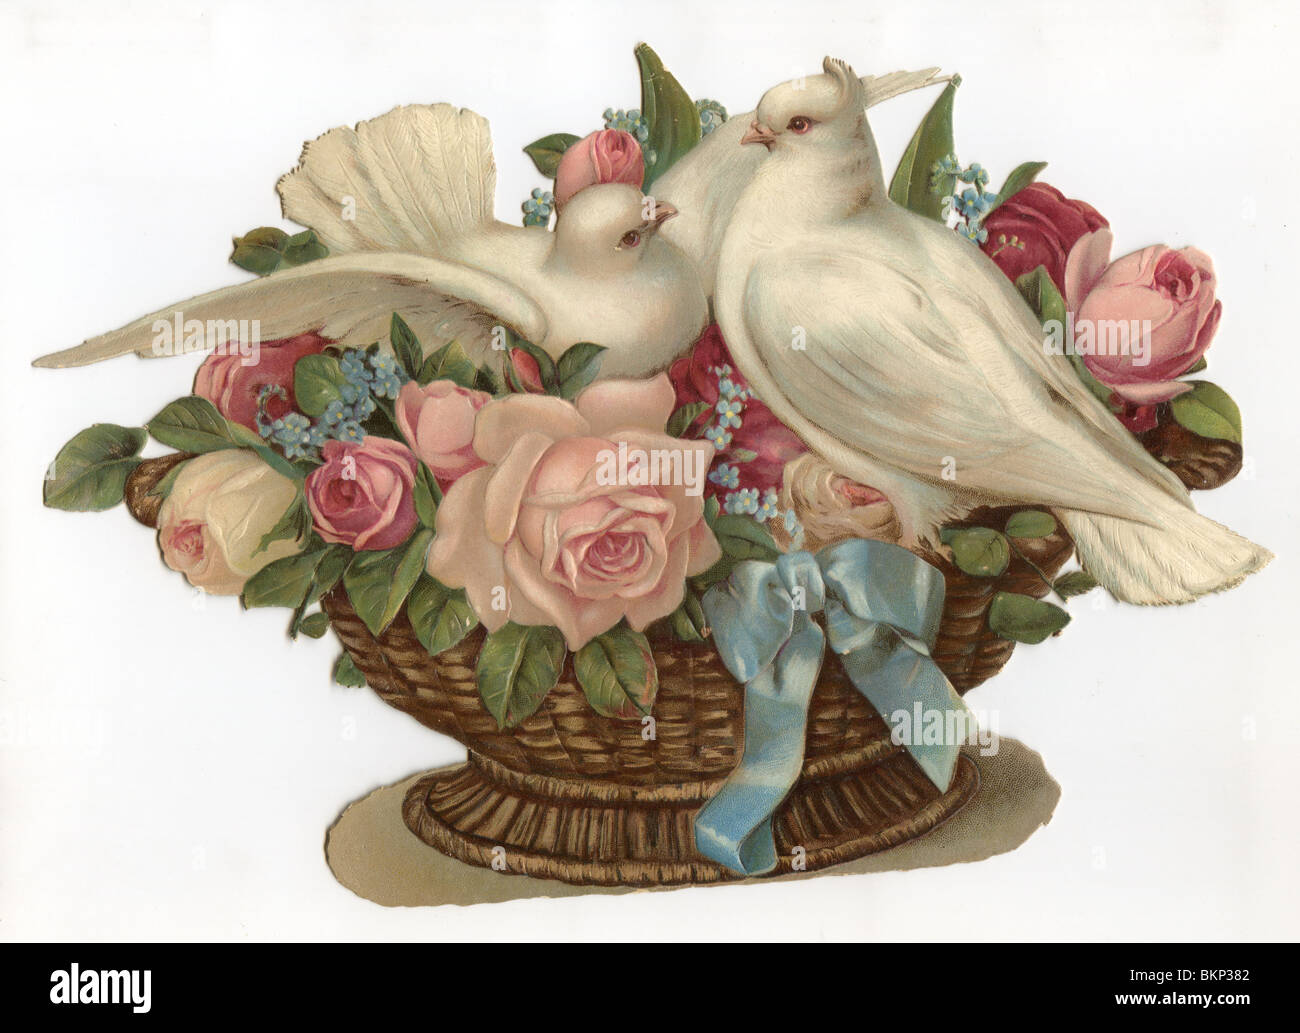 Weiße Tauben in einem Weidenkorb mit Rosen Stockfoto